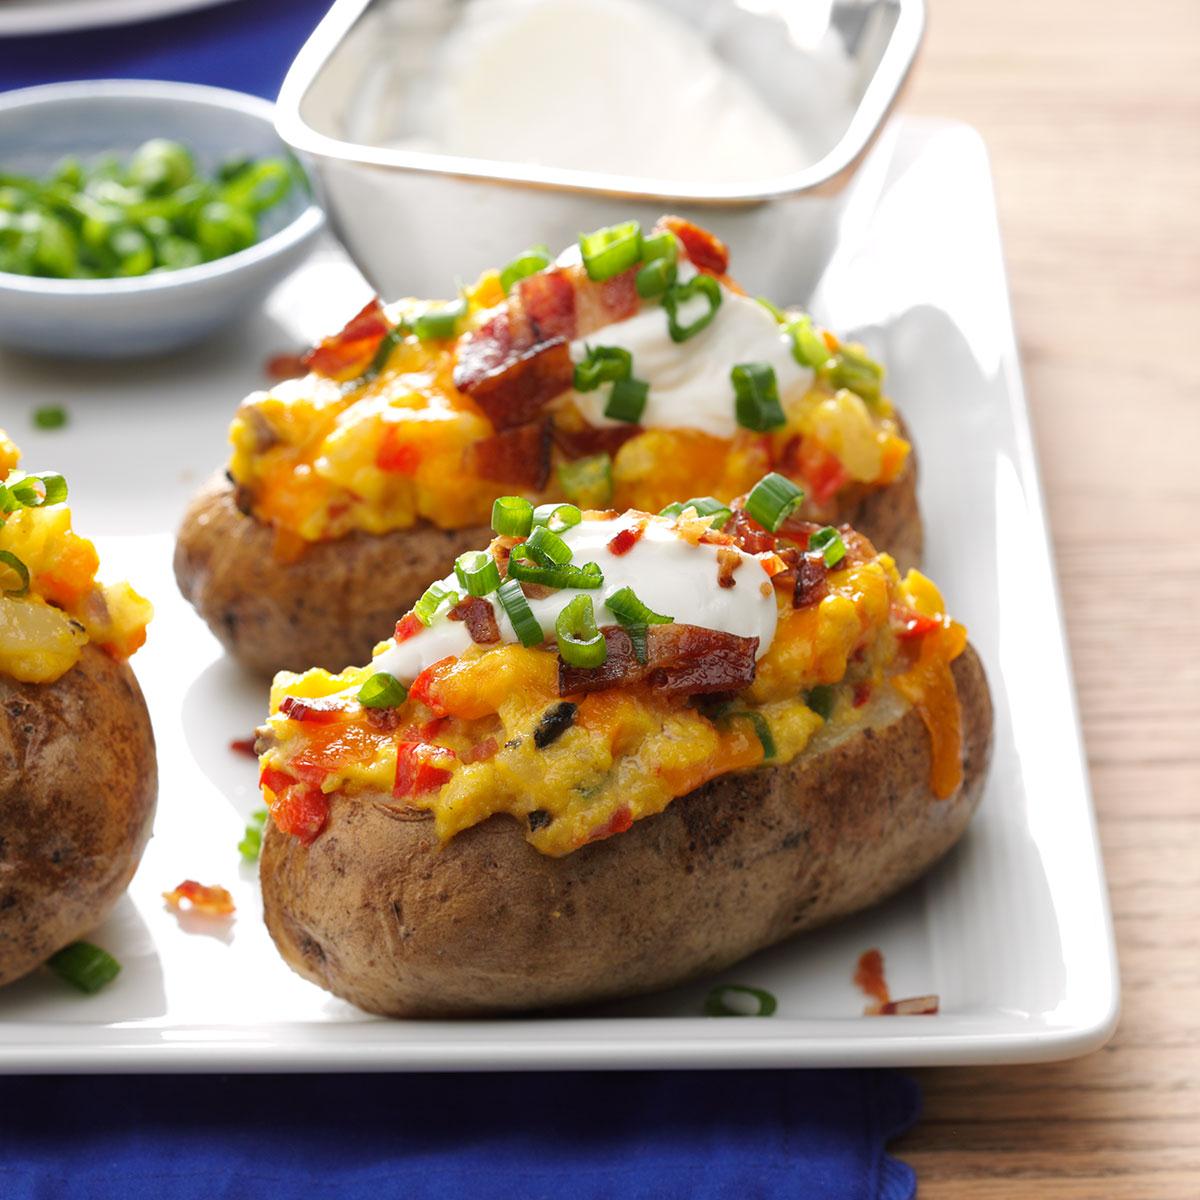 Favorite Loaded Breakfast Potatoes Recipe: How to Make It